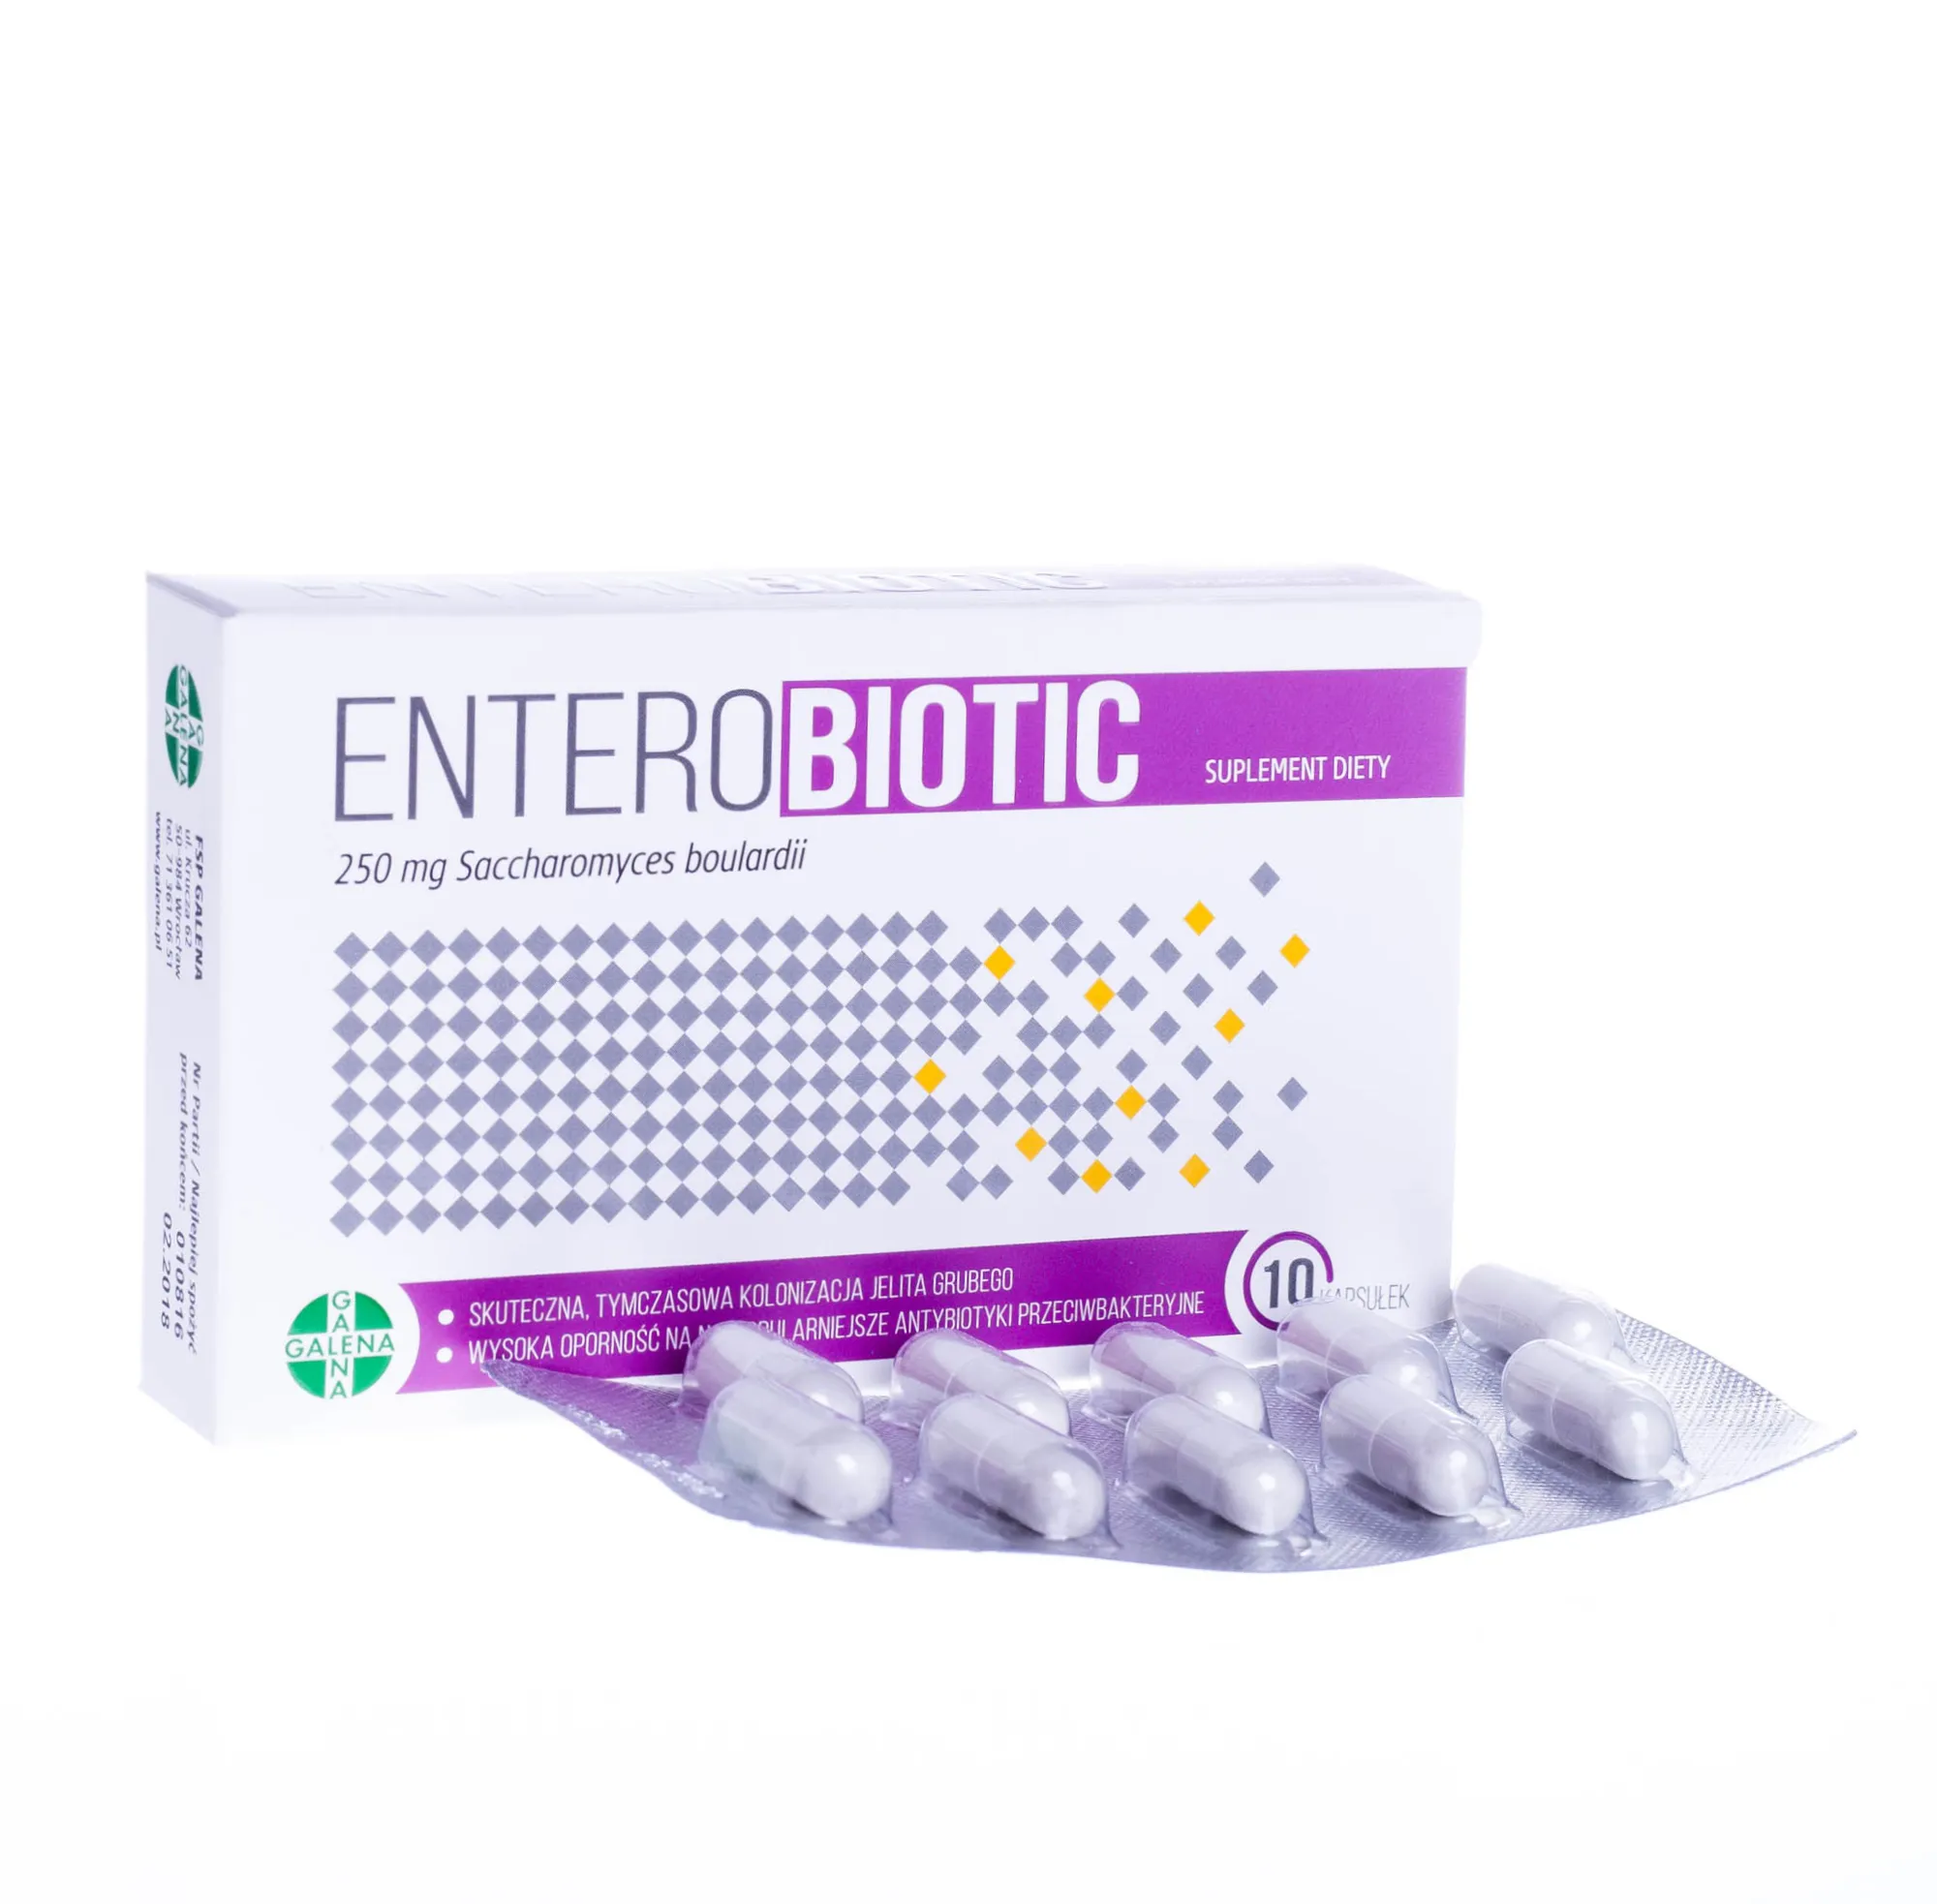 Enterobiotic 250 mg, Saccharomyces boulardii, suplement diety, 10 kapsułek 